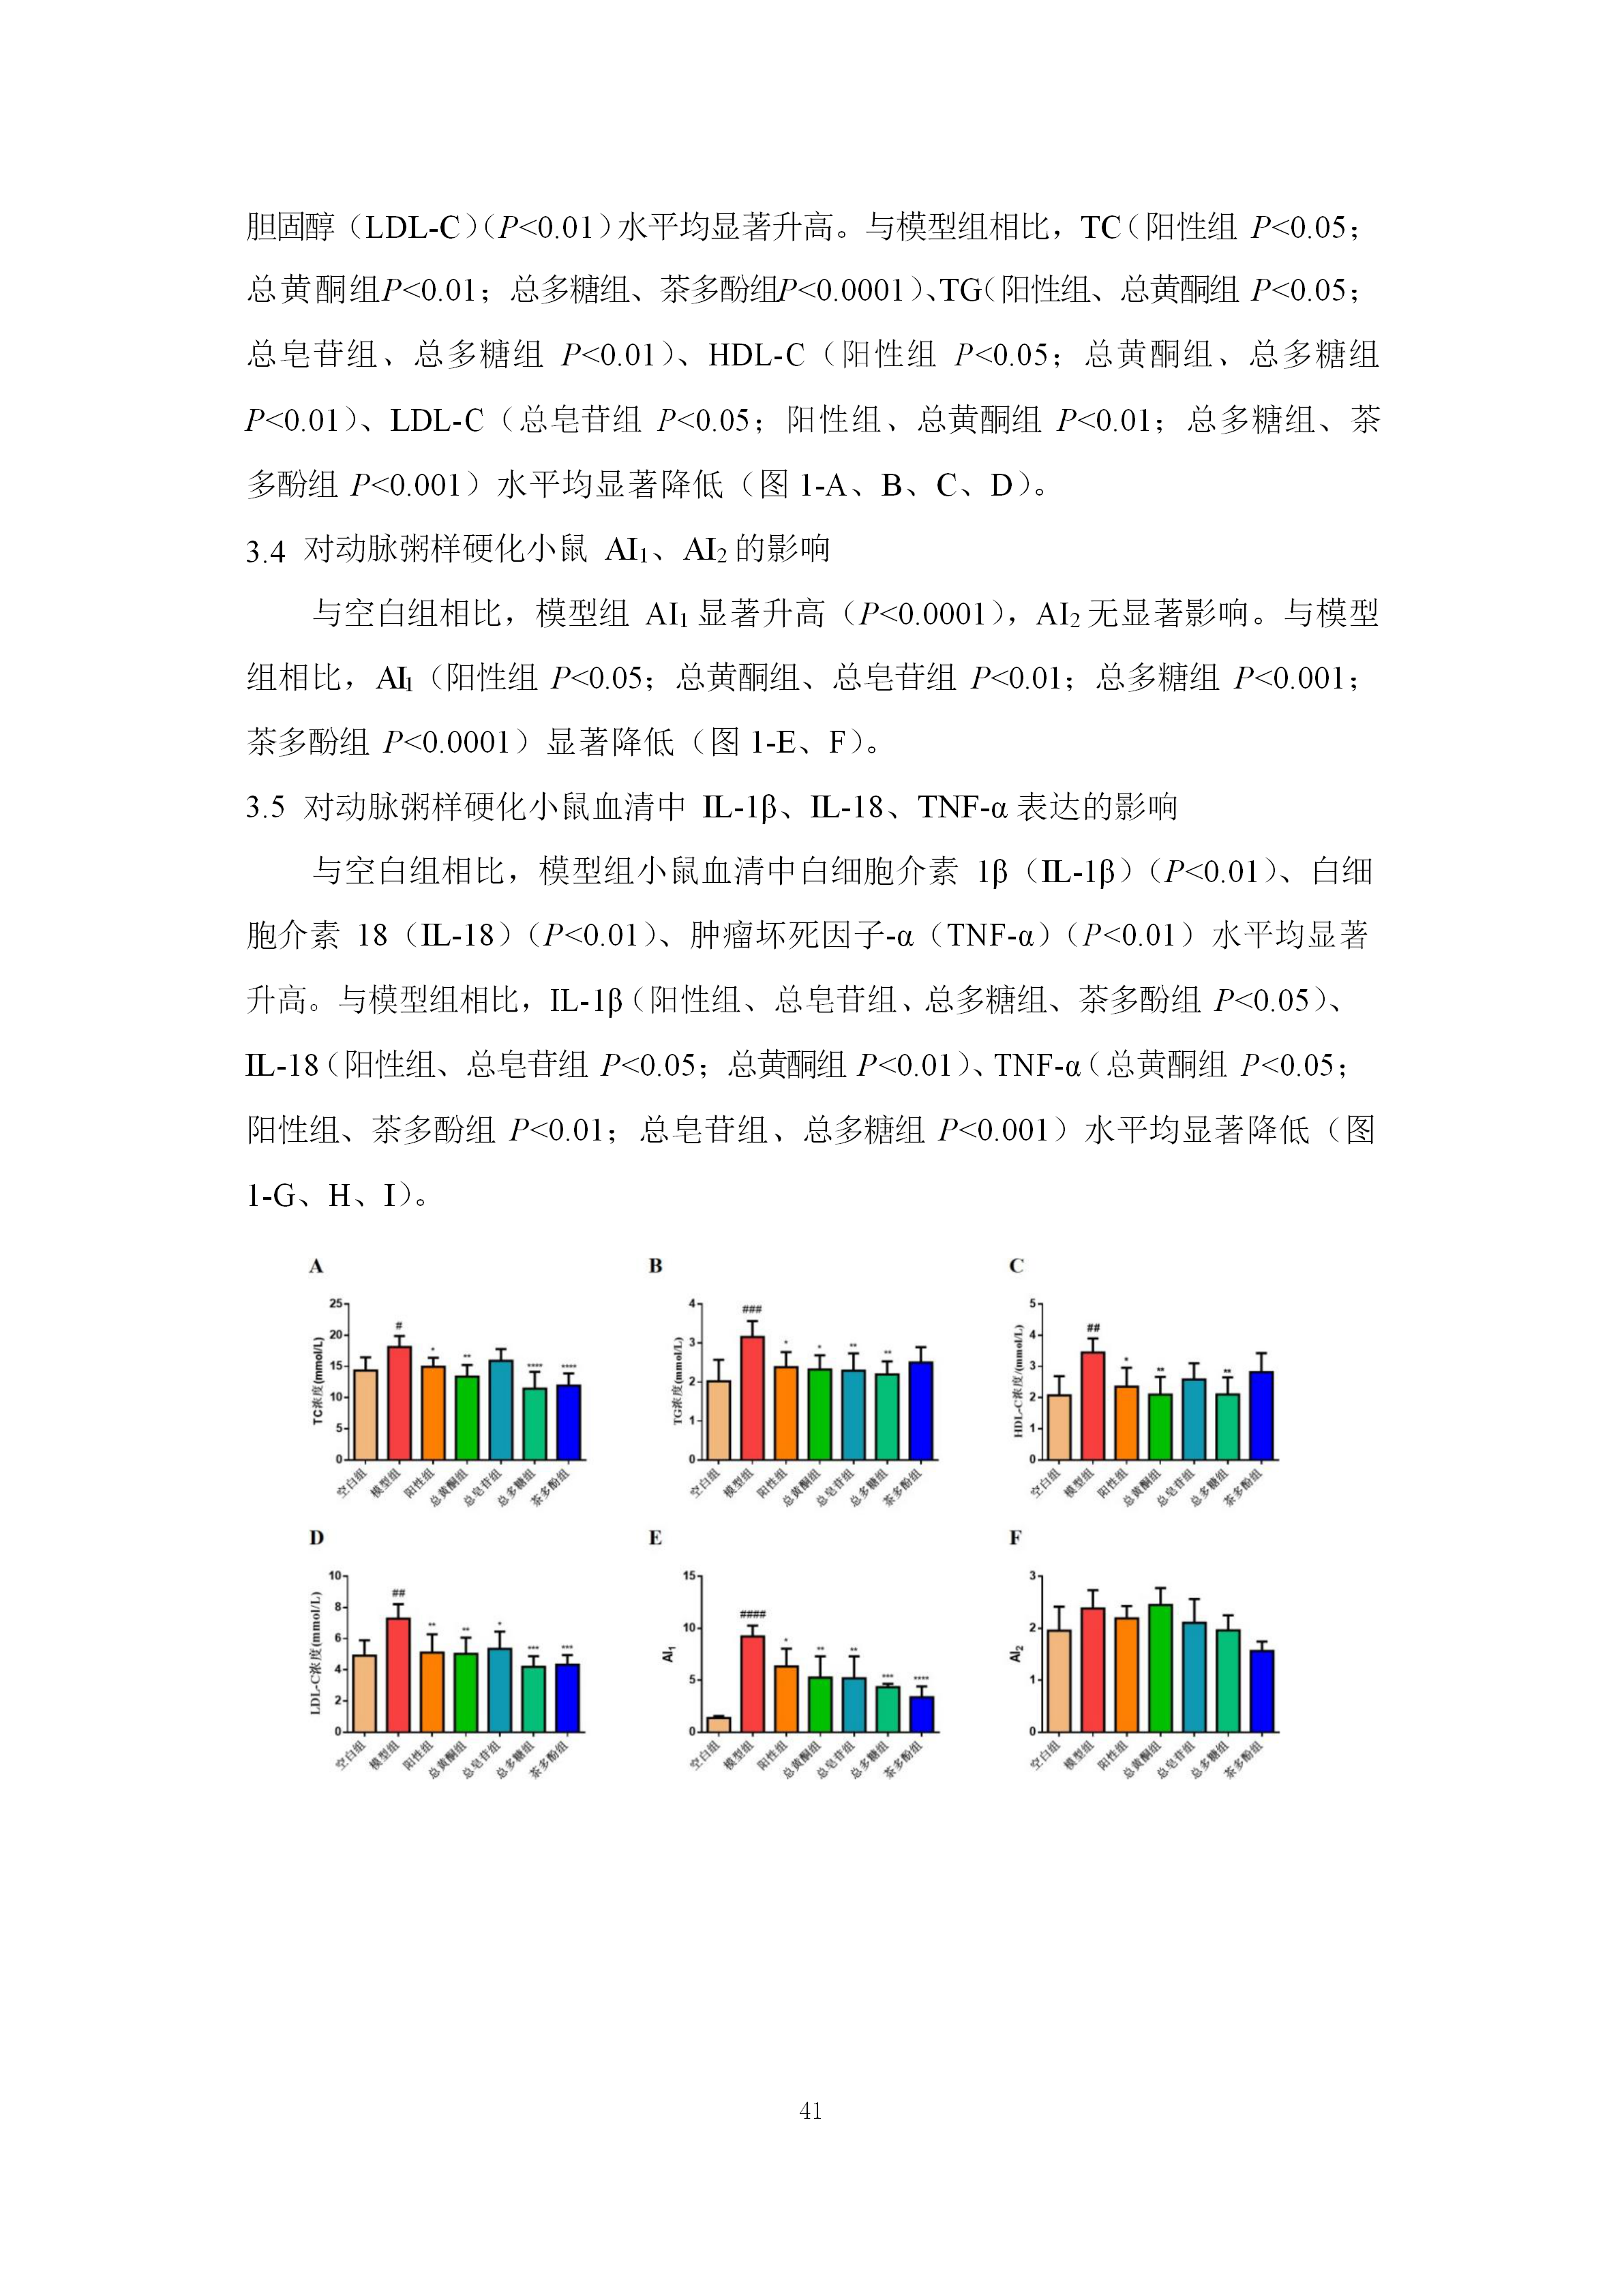 阳府井枣芽红茶功效学试验技术报告8.6.2(1)(1)(1)(1)(1)(1)_44.png